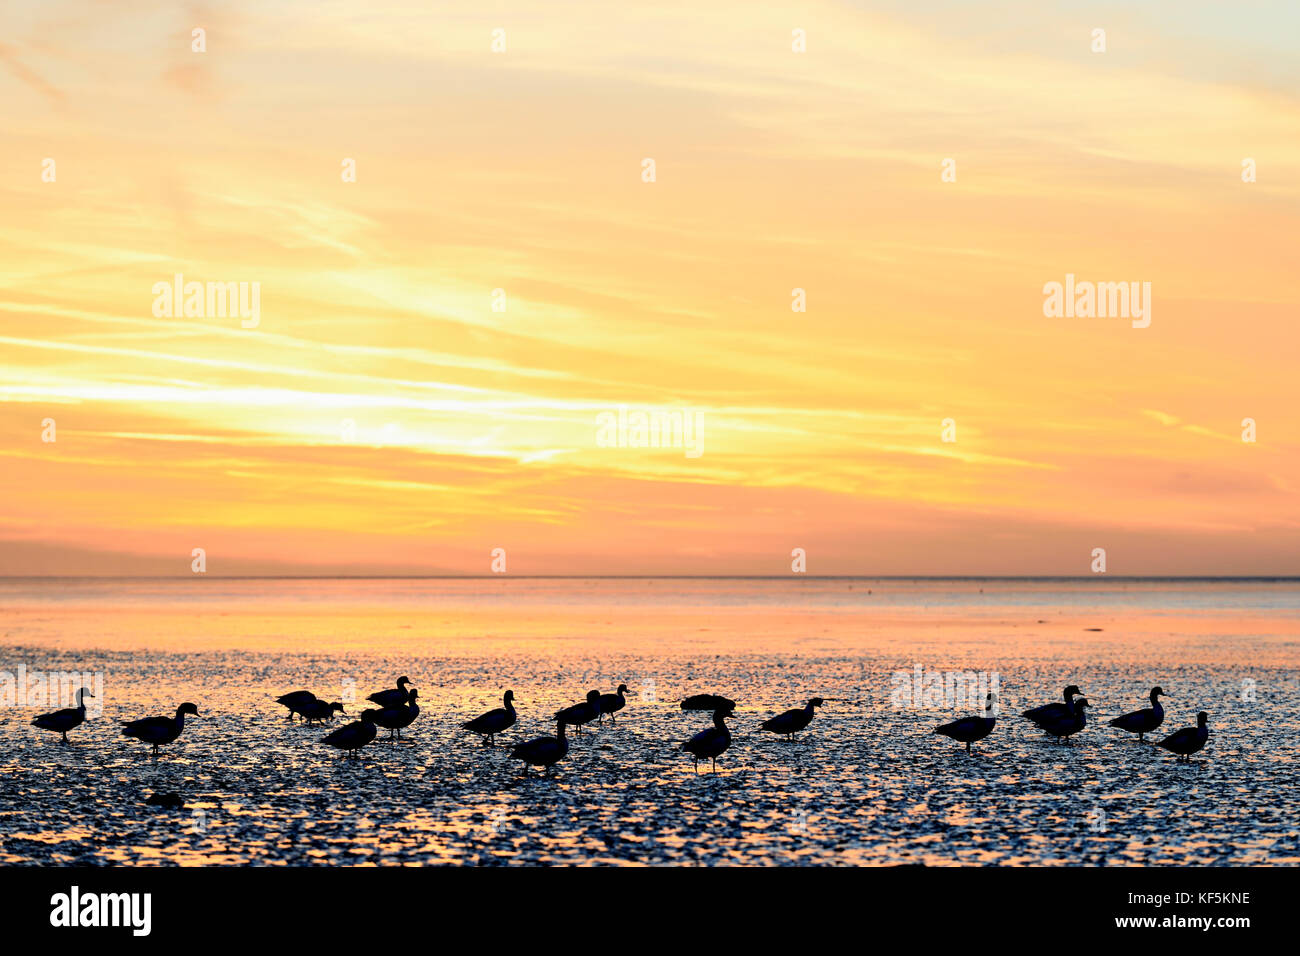 Le coucher du soleil, soir, ambiance de la mer du Nord à marée basse avec des silhouettes d'shelducksn (Tadorna tadorna commun), norddeich Banque D'Images